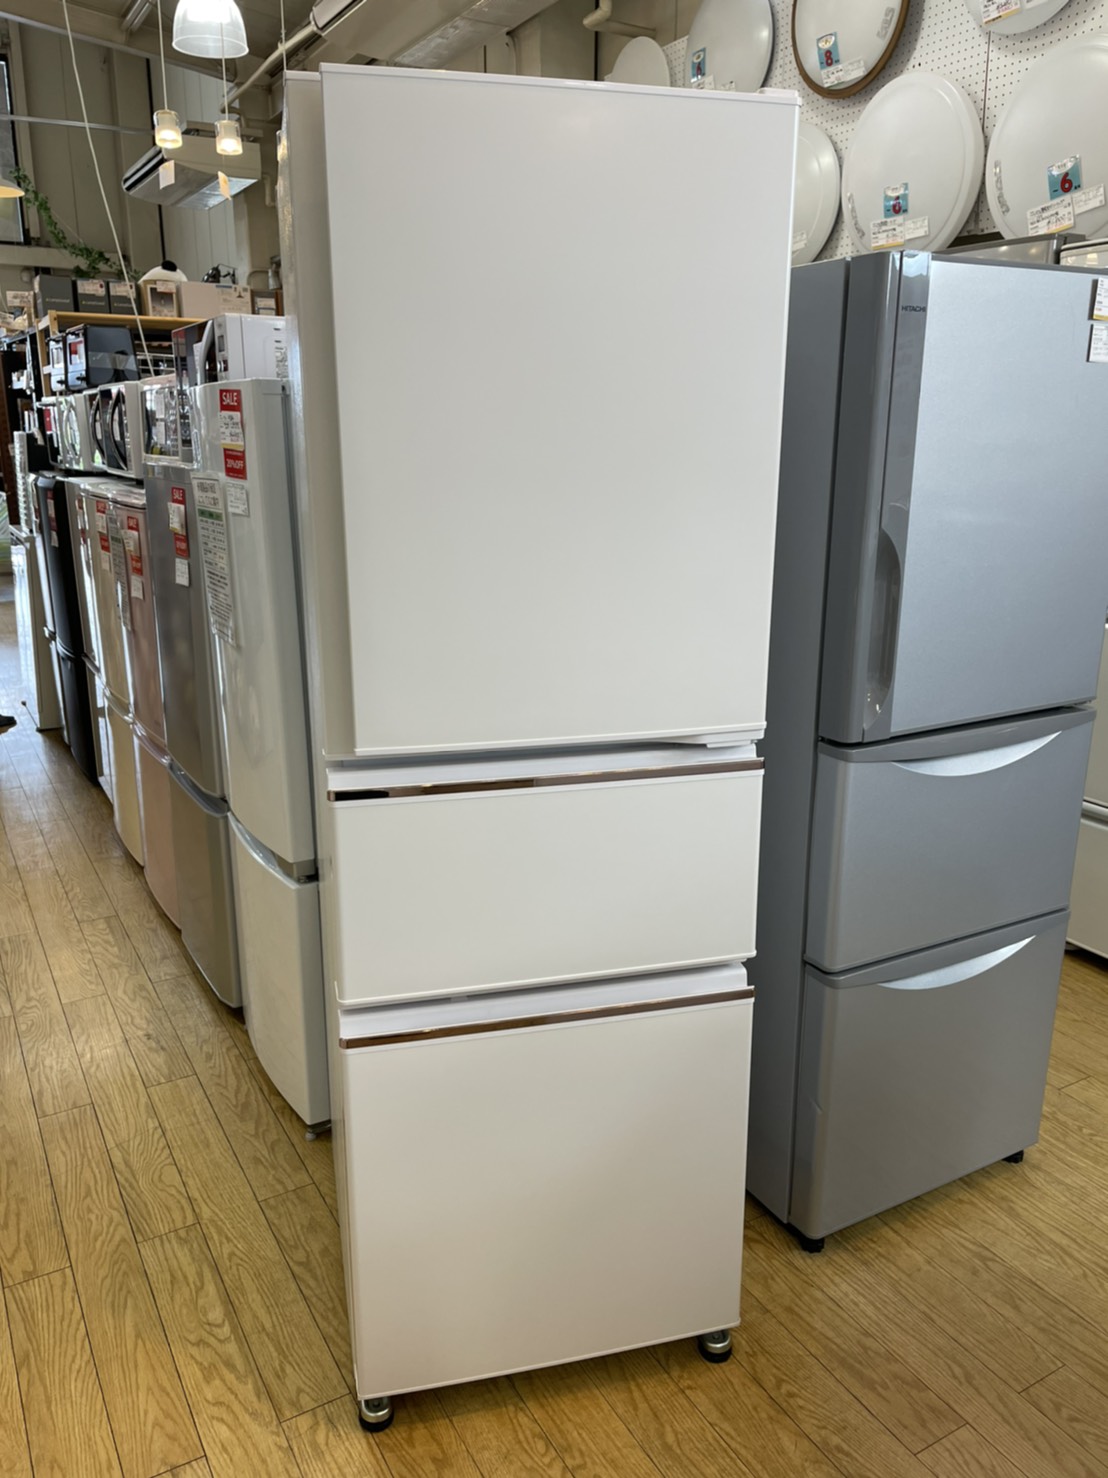 三菱 272L 冷蔵庫 3ドア MR-CX27D 2019年製 買取しました | 愛知と岐阜のリサイクルショップ 再良市場